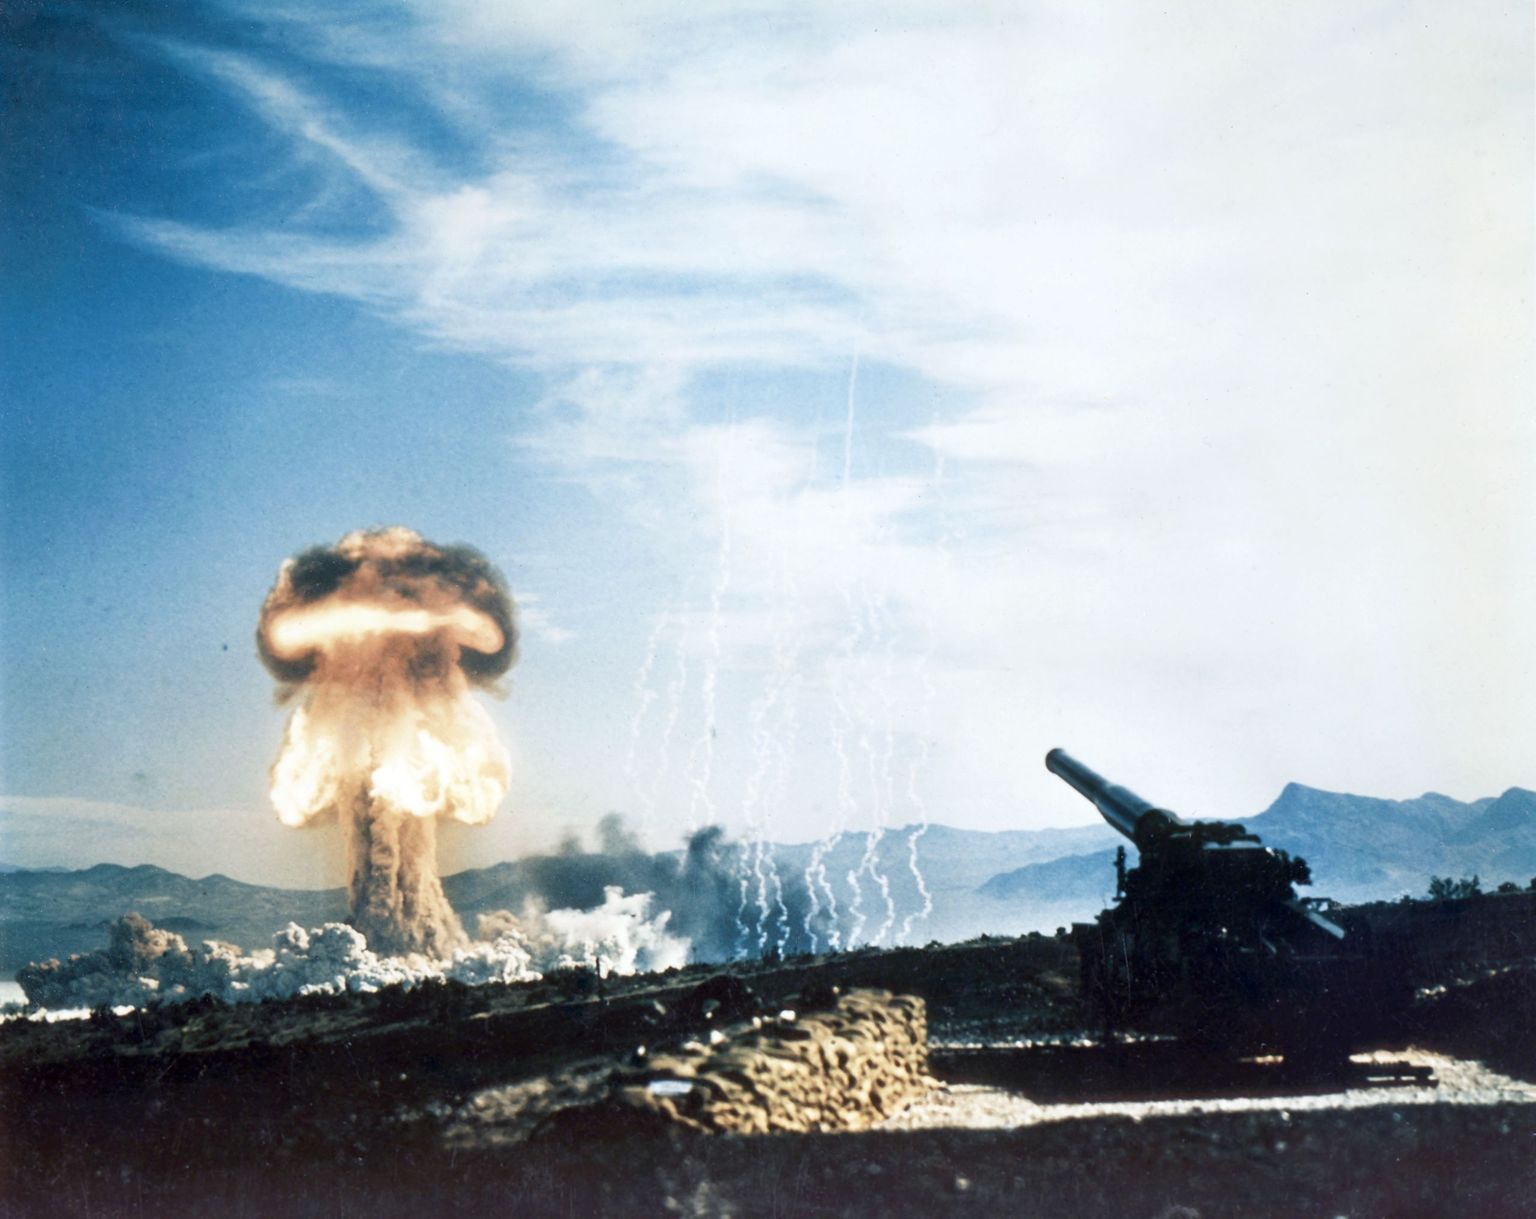 280 mm tuumamürsu tulistamine 1953 aastal
Ühendriikides Nevada kõrbes toimunud katsetuste käigus. Selle haubitsa laskekaugus on kuni 30 km. 